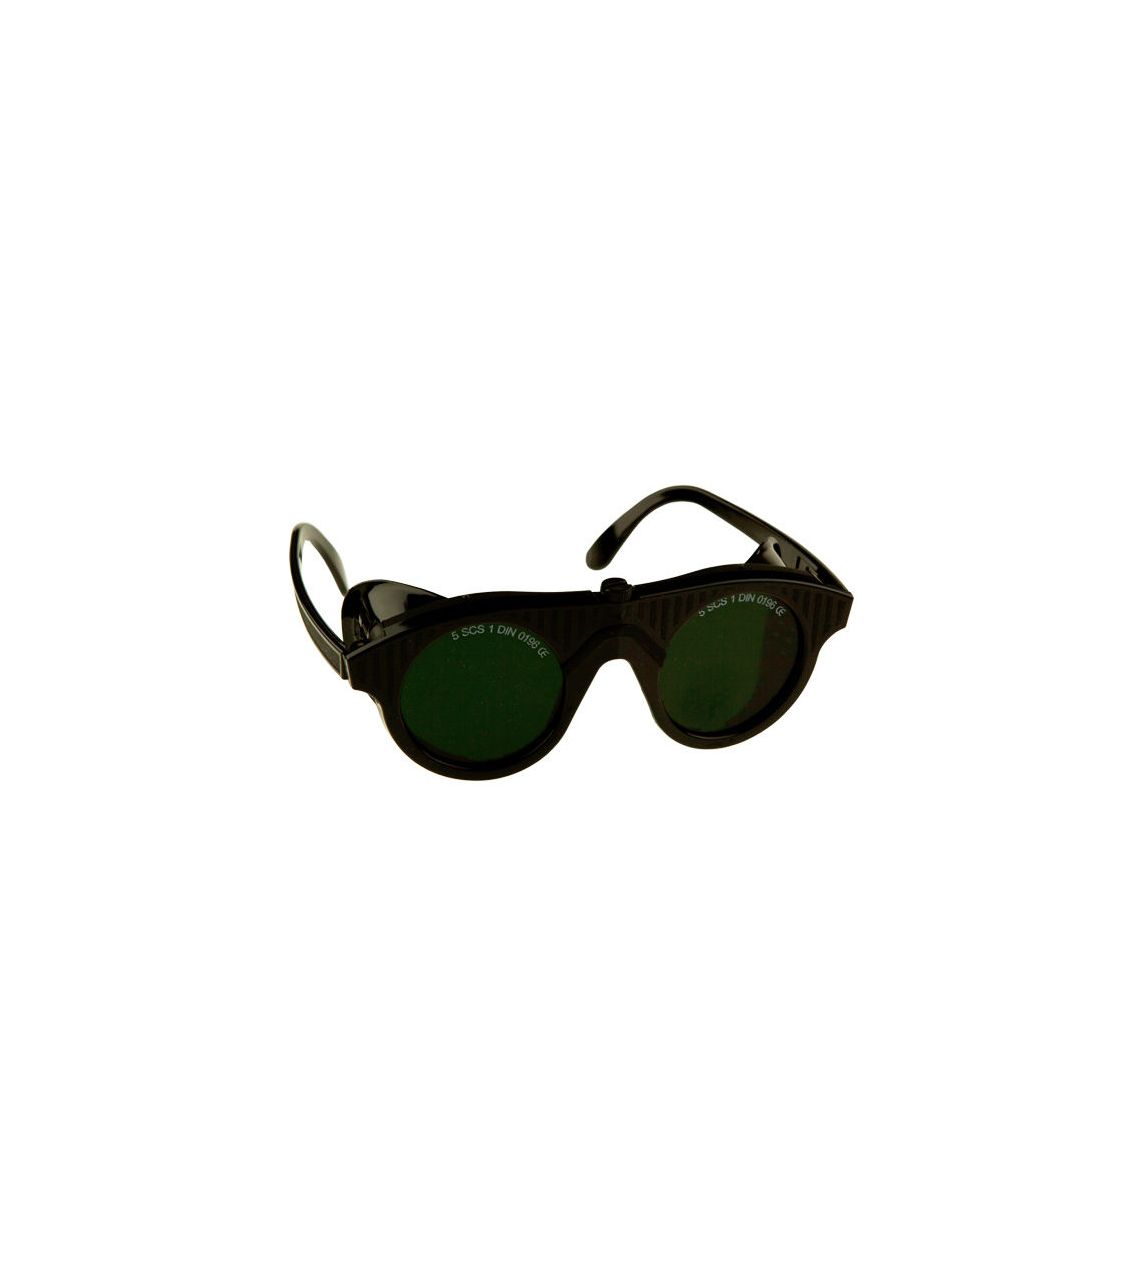 Leichte Schweisserbrille Berondo. Seitenschutz. Grüne Mineralgläser IR5.